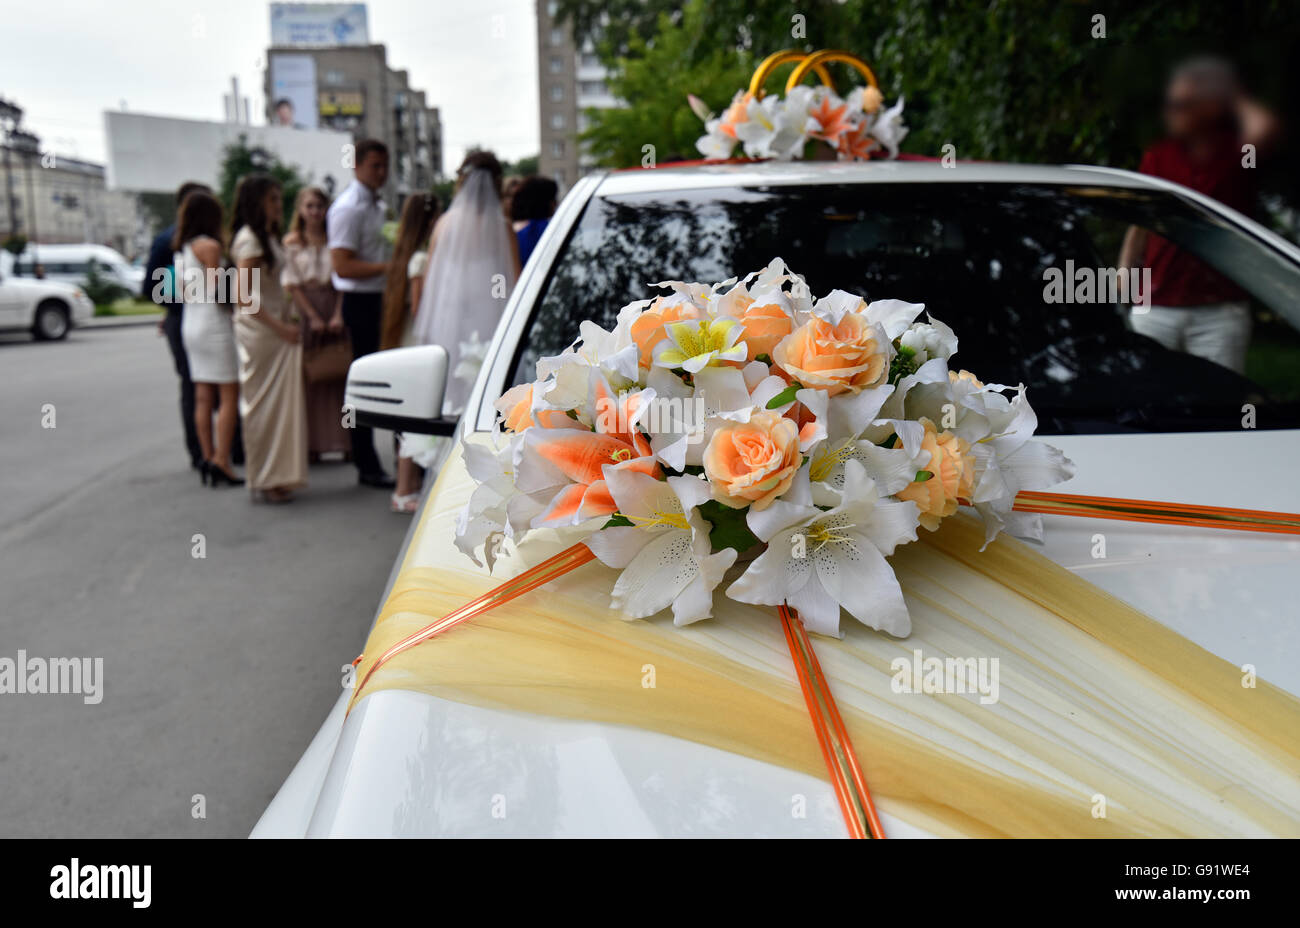 Images Gratuites : voiture, roue, fleur, bouquet, décoration